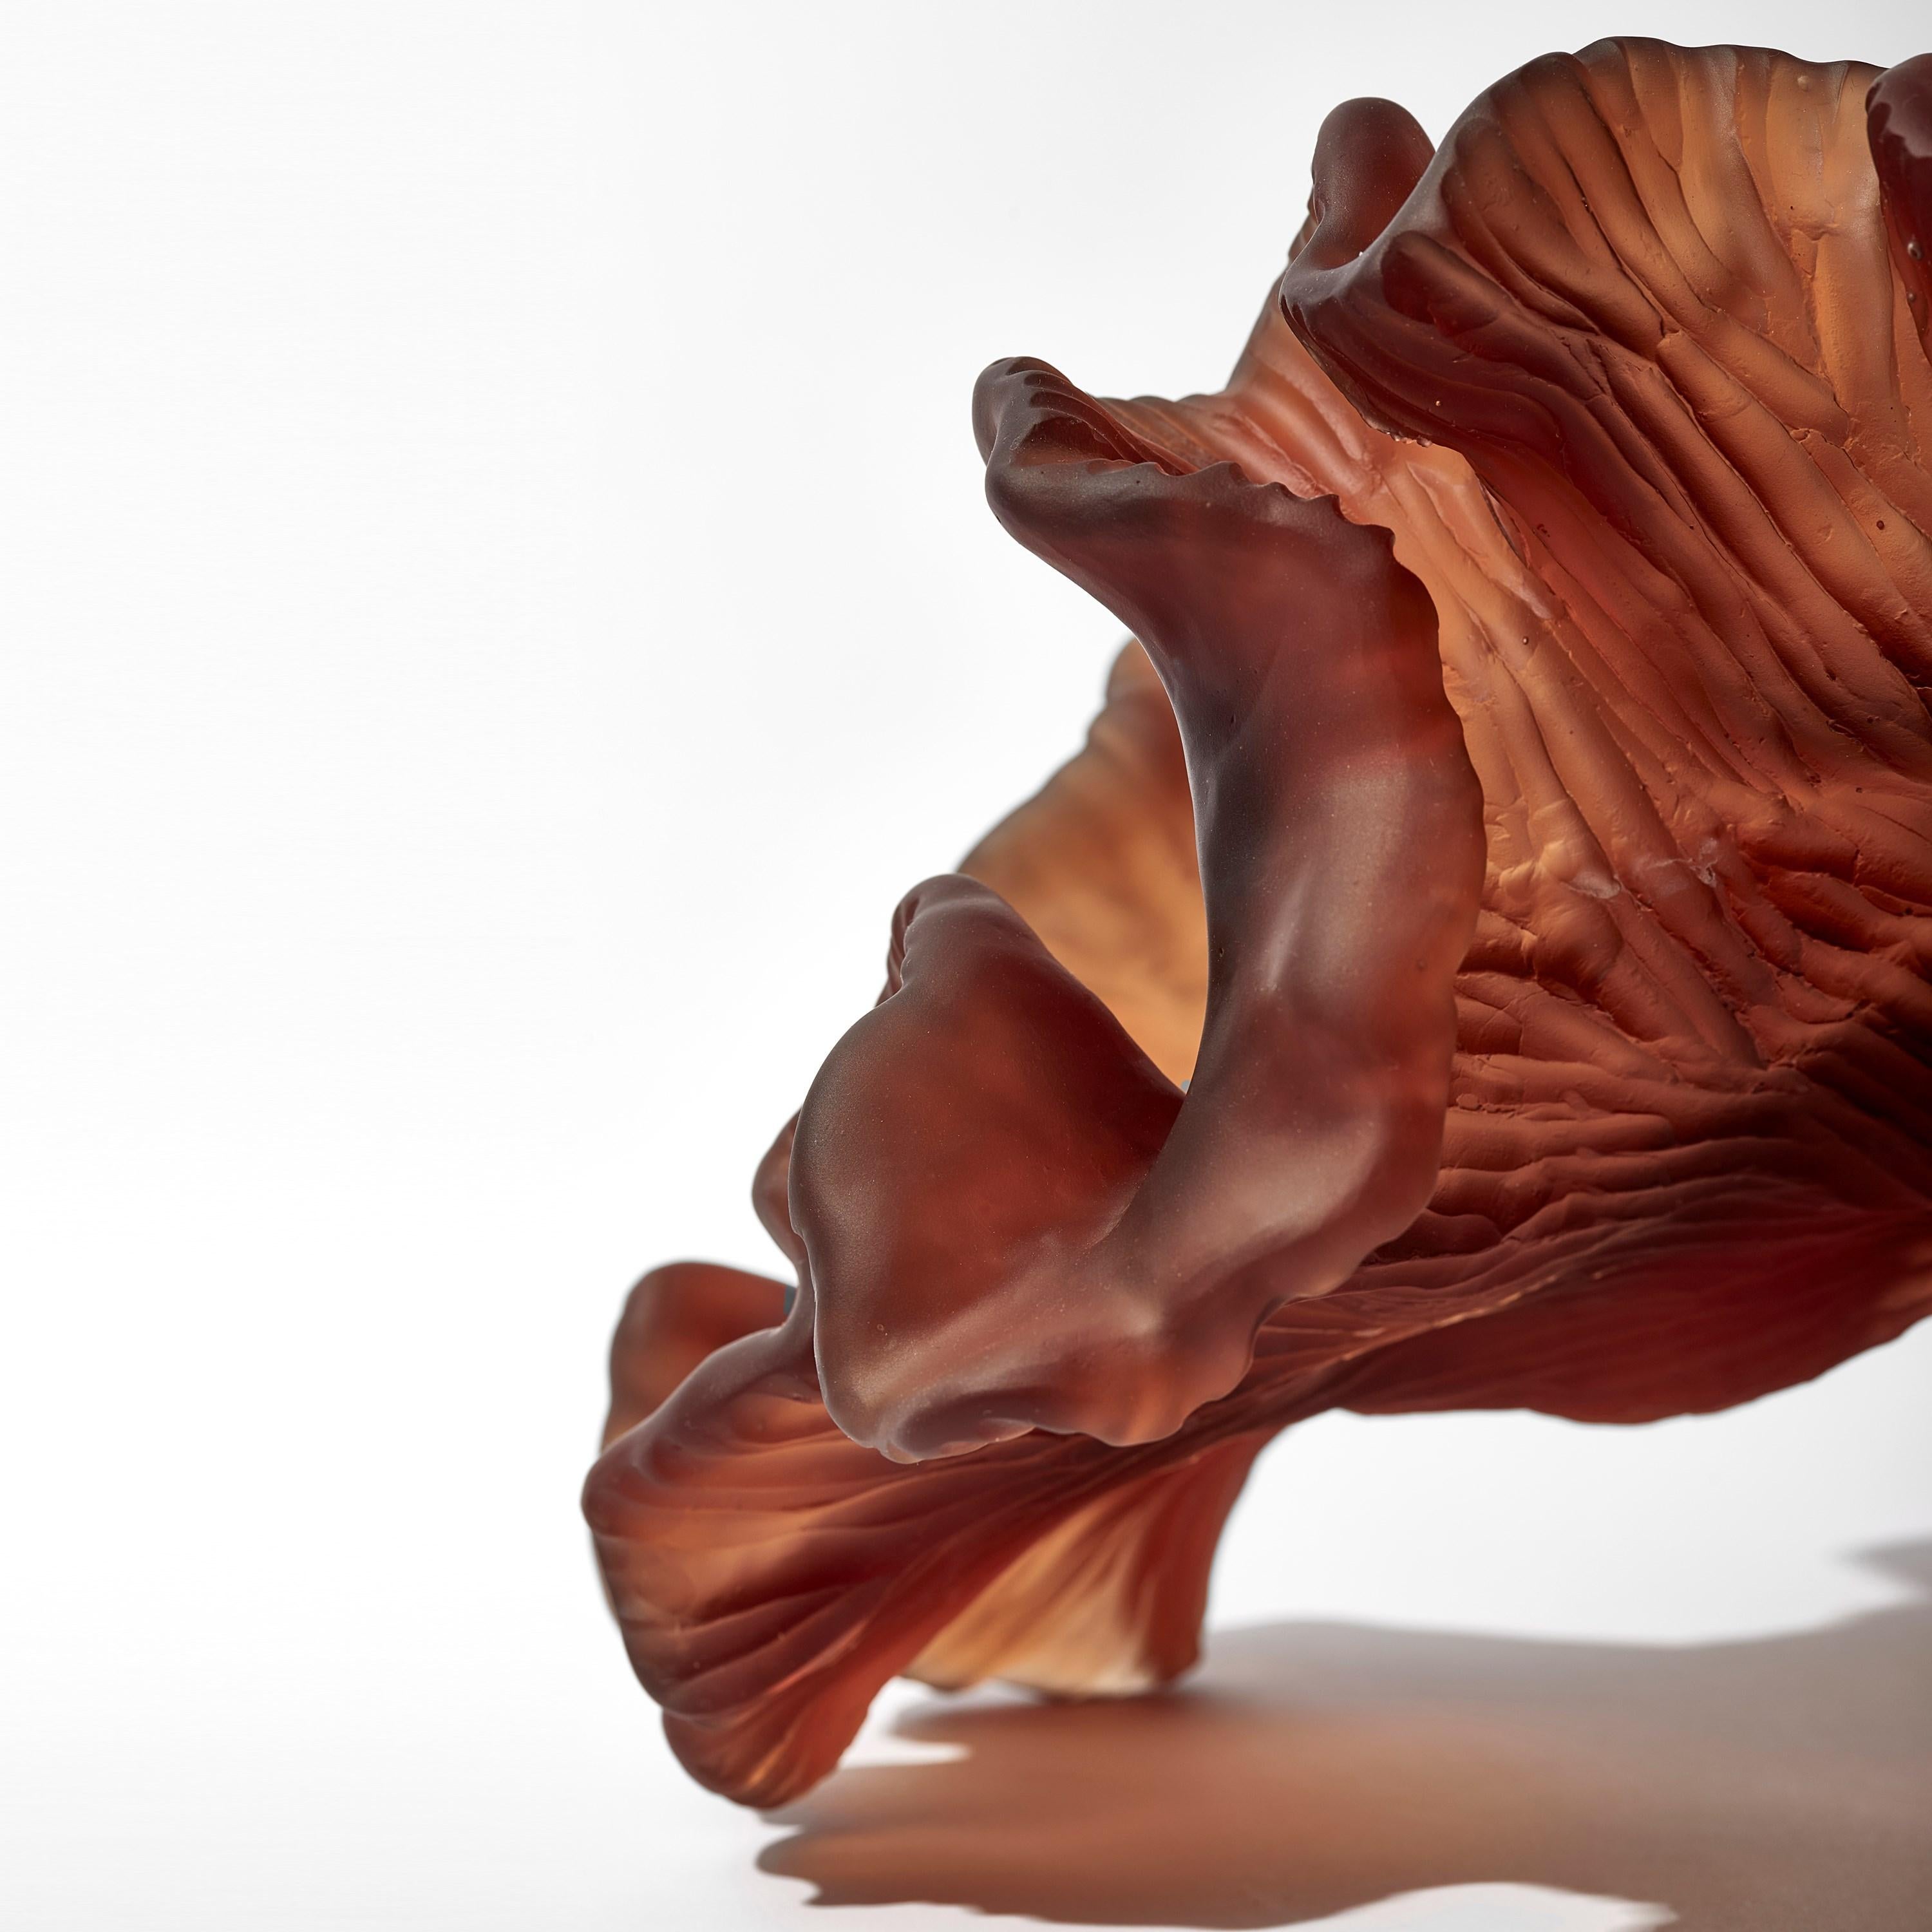 Cut Glass Still Drift, dark amber / brown organic glass abstract artwork by Monette Larsen